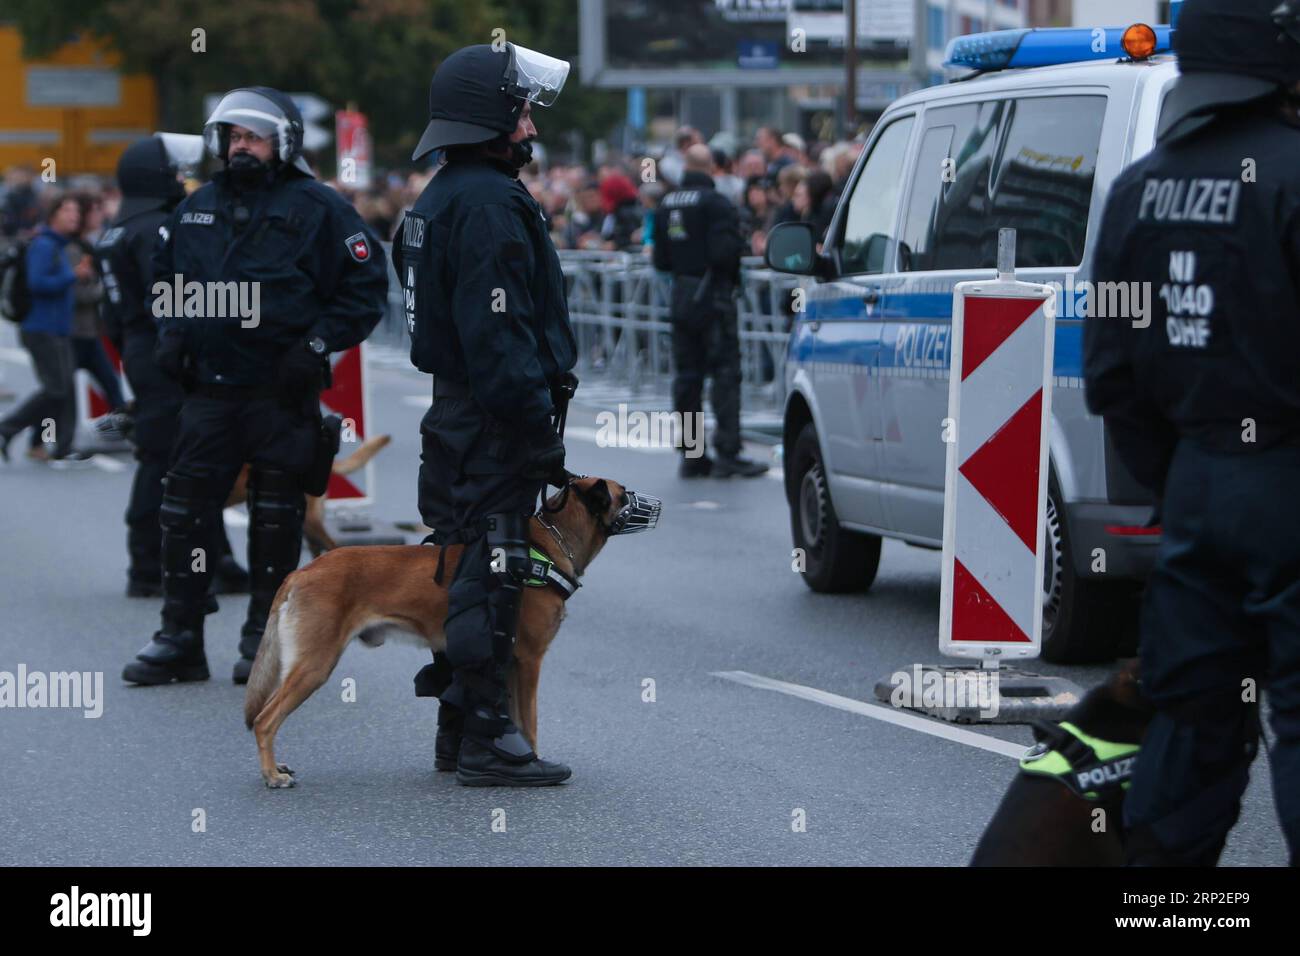 (180902) -- CHEMNITZ, 2 septembre 2018 -- des policiers gardent le site de la manifestation à Chemnitz, dans l'est de l'Allemagne, le 1 septembre 2018. Environ 8 000 personnes sont descendues dans les rues de la ville allemande de Chemnitz samedi, y compris des partisans du parti de droite AfD et des initiatives xénophobes, et des personnes qui protestent contre la xénophobie, a rapporté l'Agence de presse allemande (DPA). (YY) ALLEMAGNE-CHEMNITZ-PROTESTATIONS KevinxVoigt PUBLICATIONxNOTxINxCHN Banque D'Images